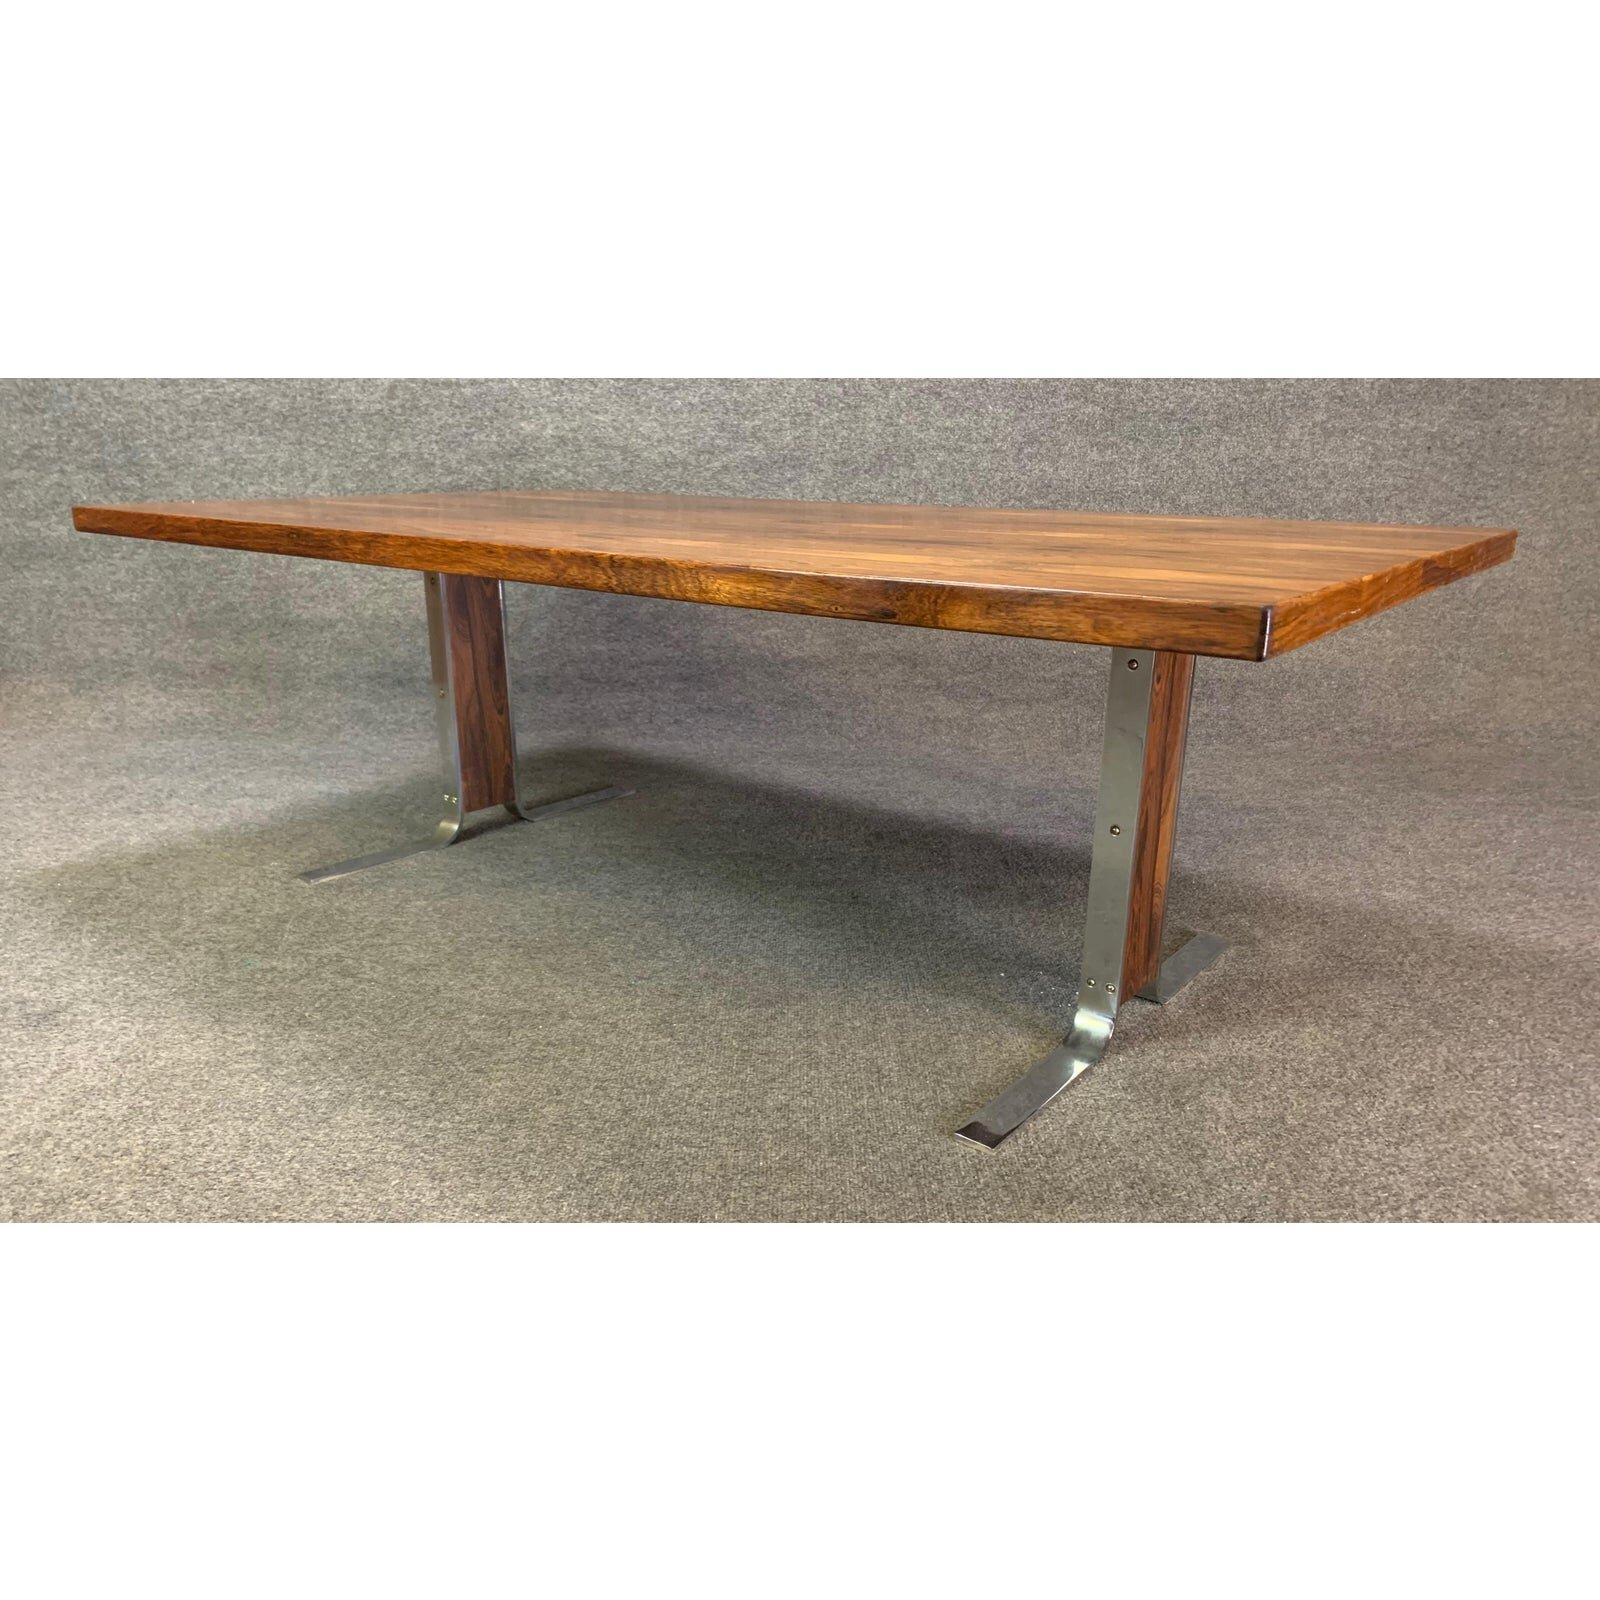 Voici une grande table basse moderne scandinave en bois de rose et accent chromé fabriquée au Danemark dans les années 1970.
Cette table basse, dans son état d'origine, présente un grand plateau avec un grain de bois vibrant et deux pieds